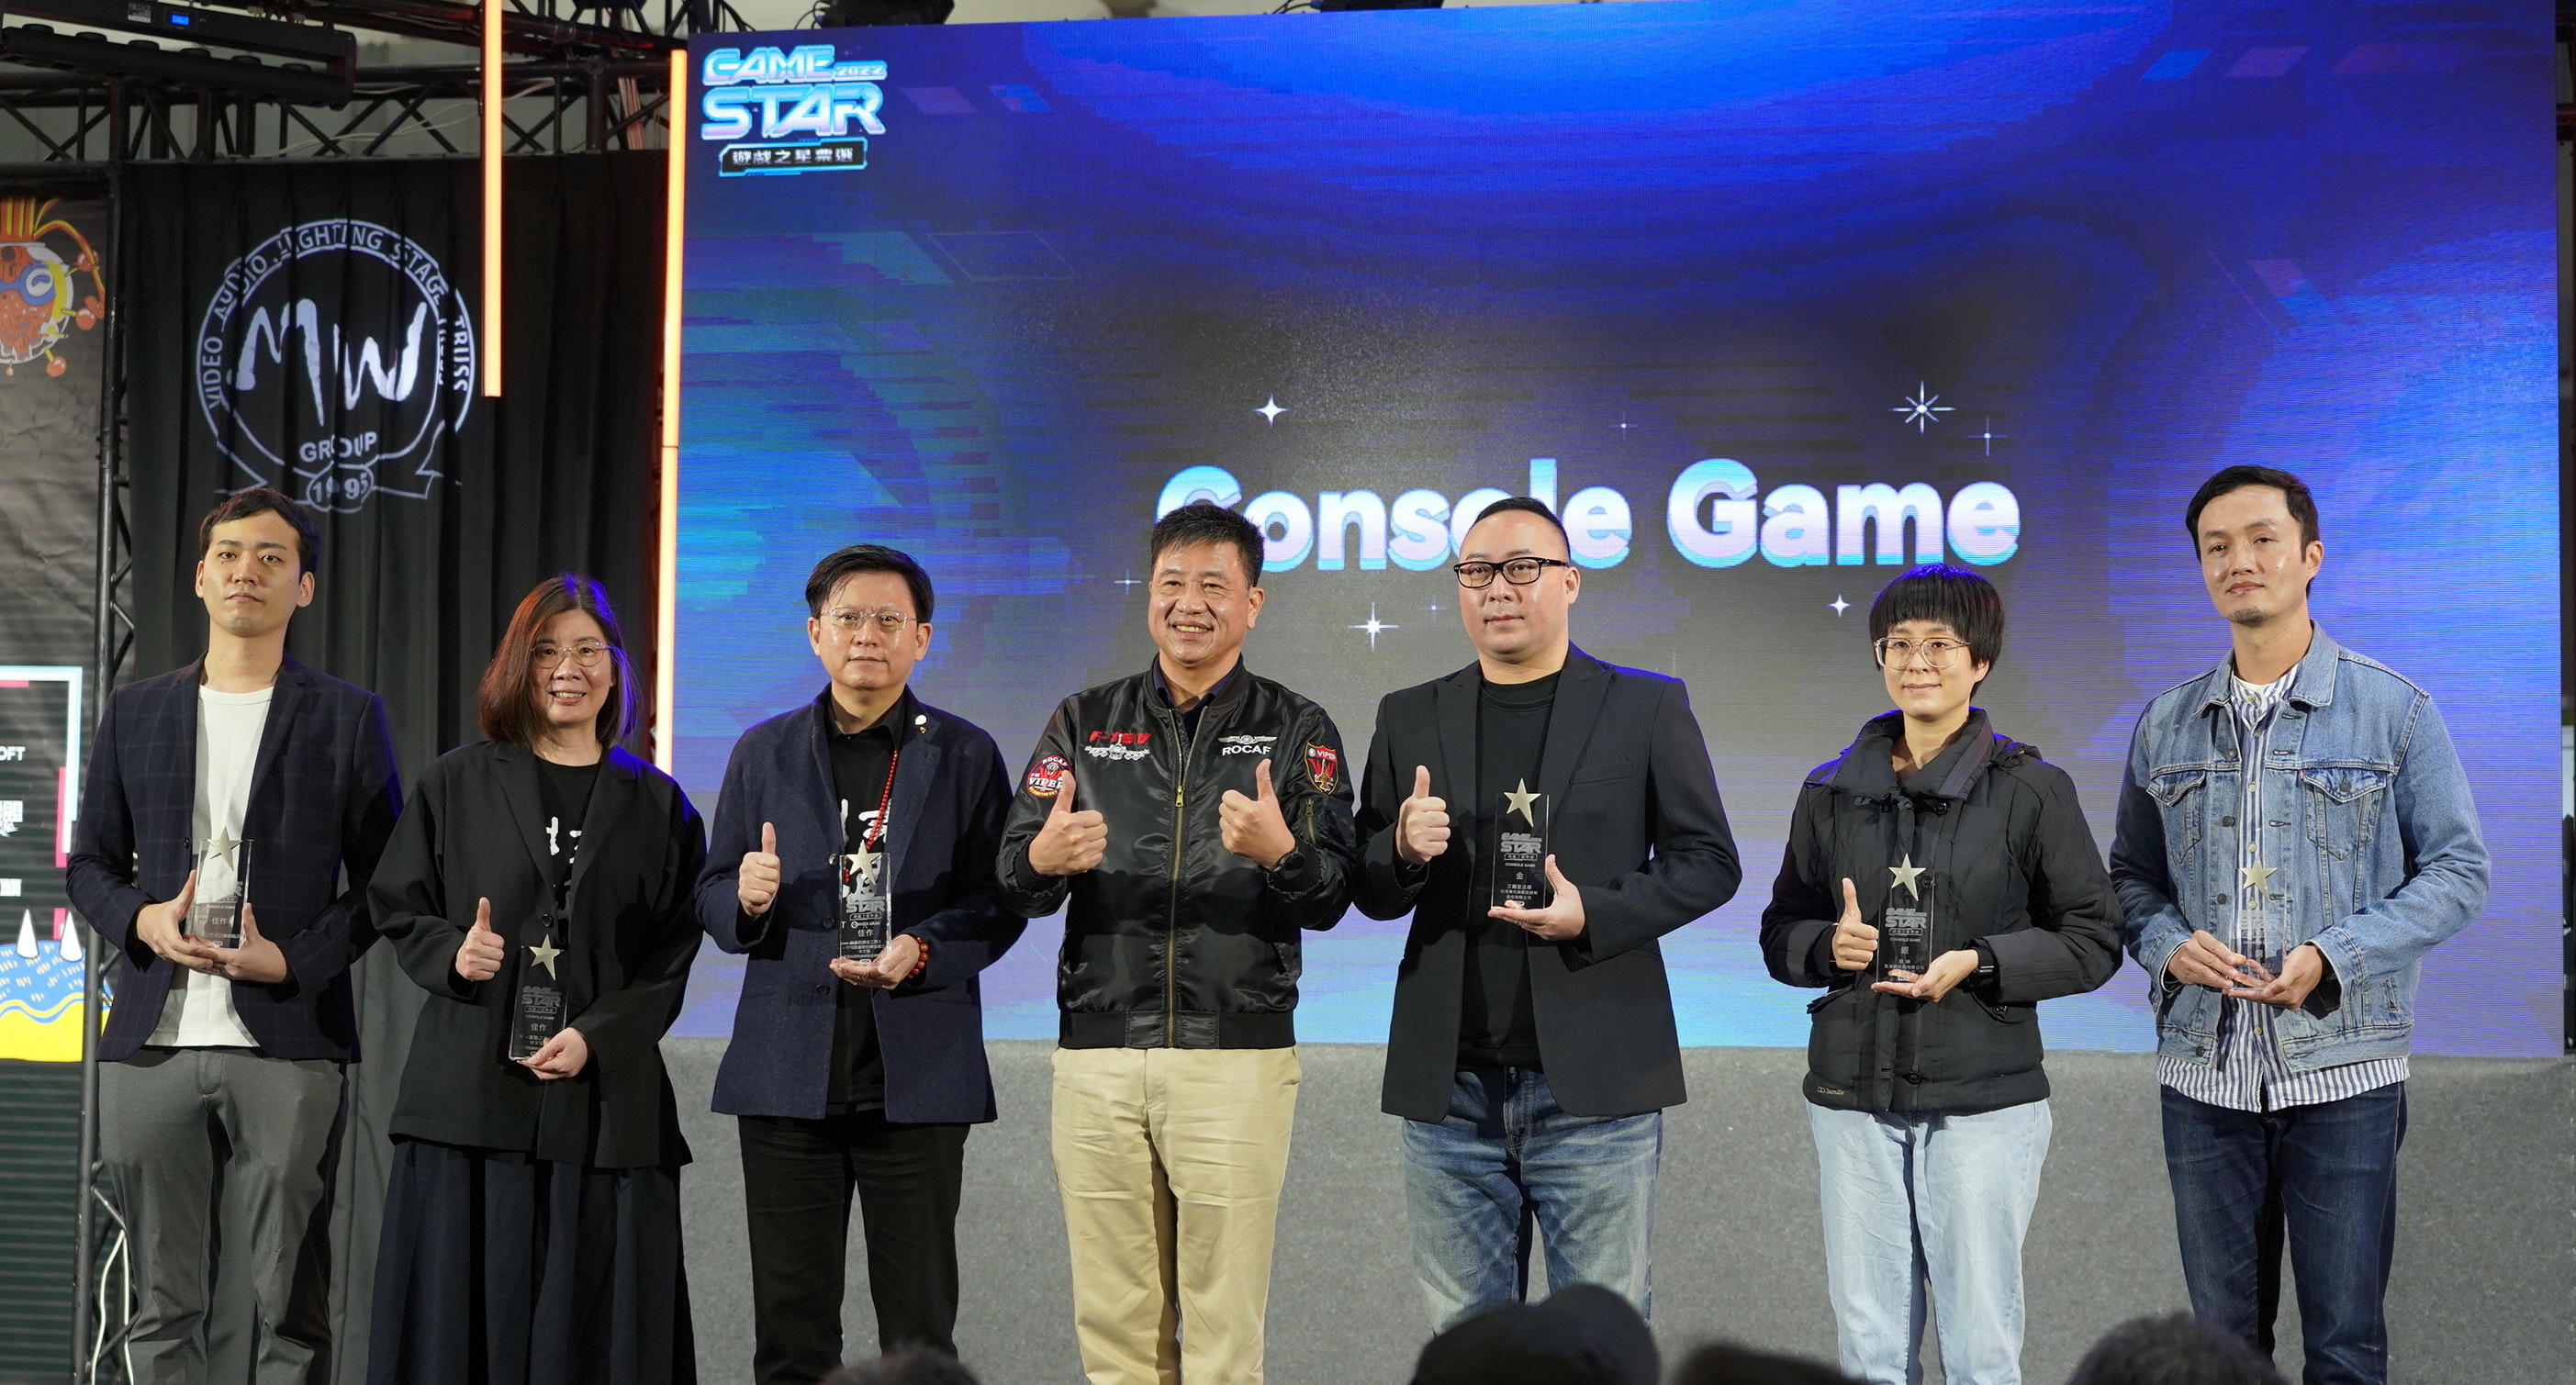 「GAME STAR 游戏之星」揭晓得奖名单 《艾尔登法环》夺 PC、TV 金奖插图2